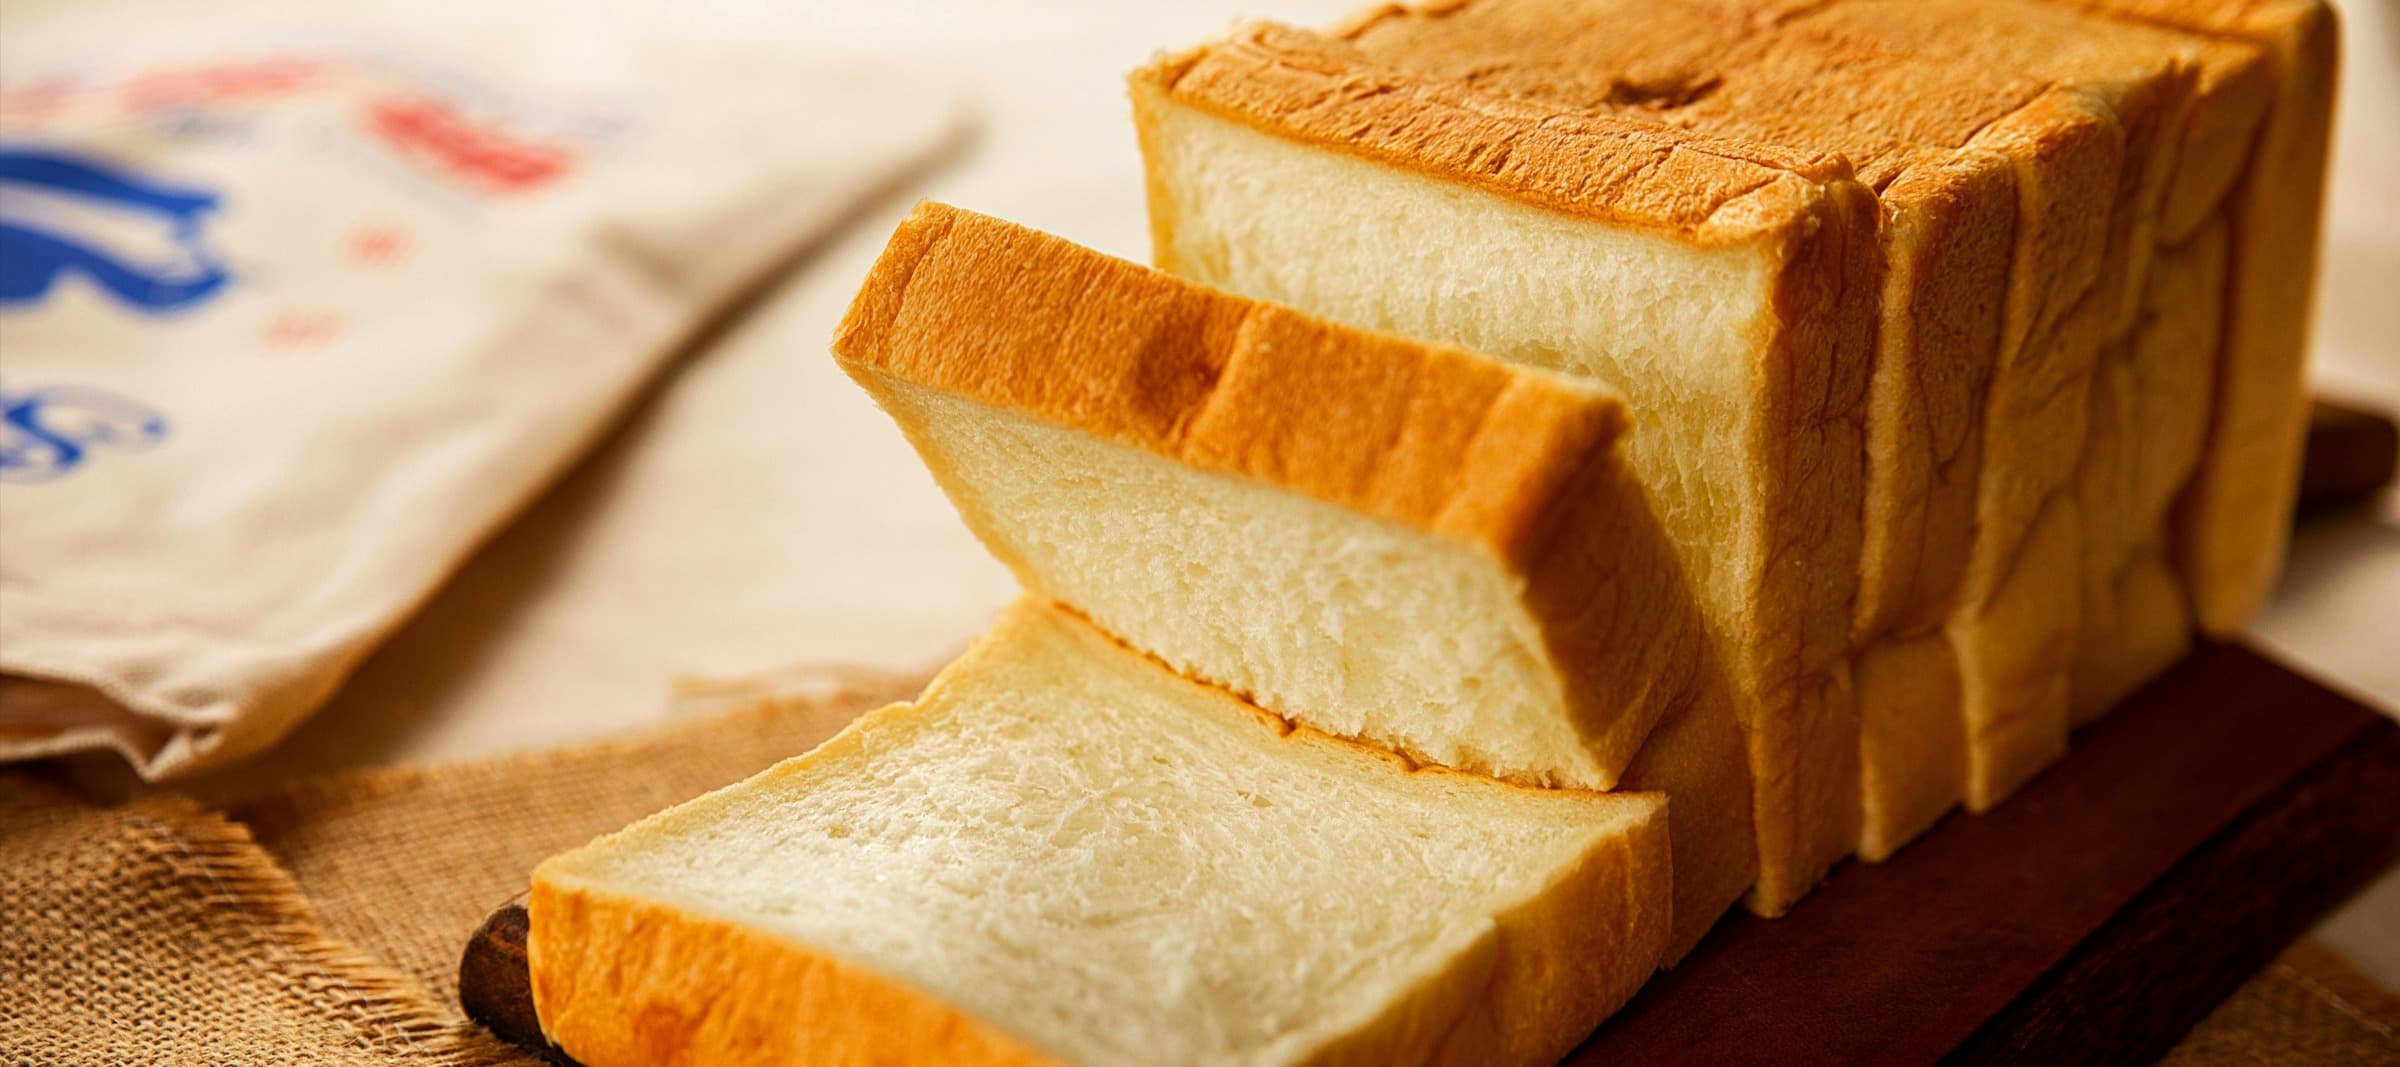 Фото новости: "Цены на хлеб в Москве и Санкт-Петербурге выросли на 30% с начала года"